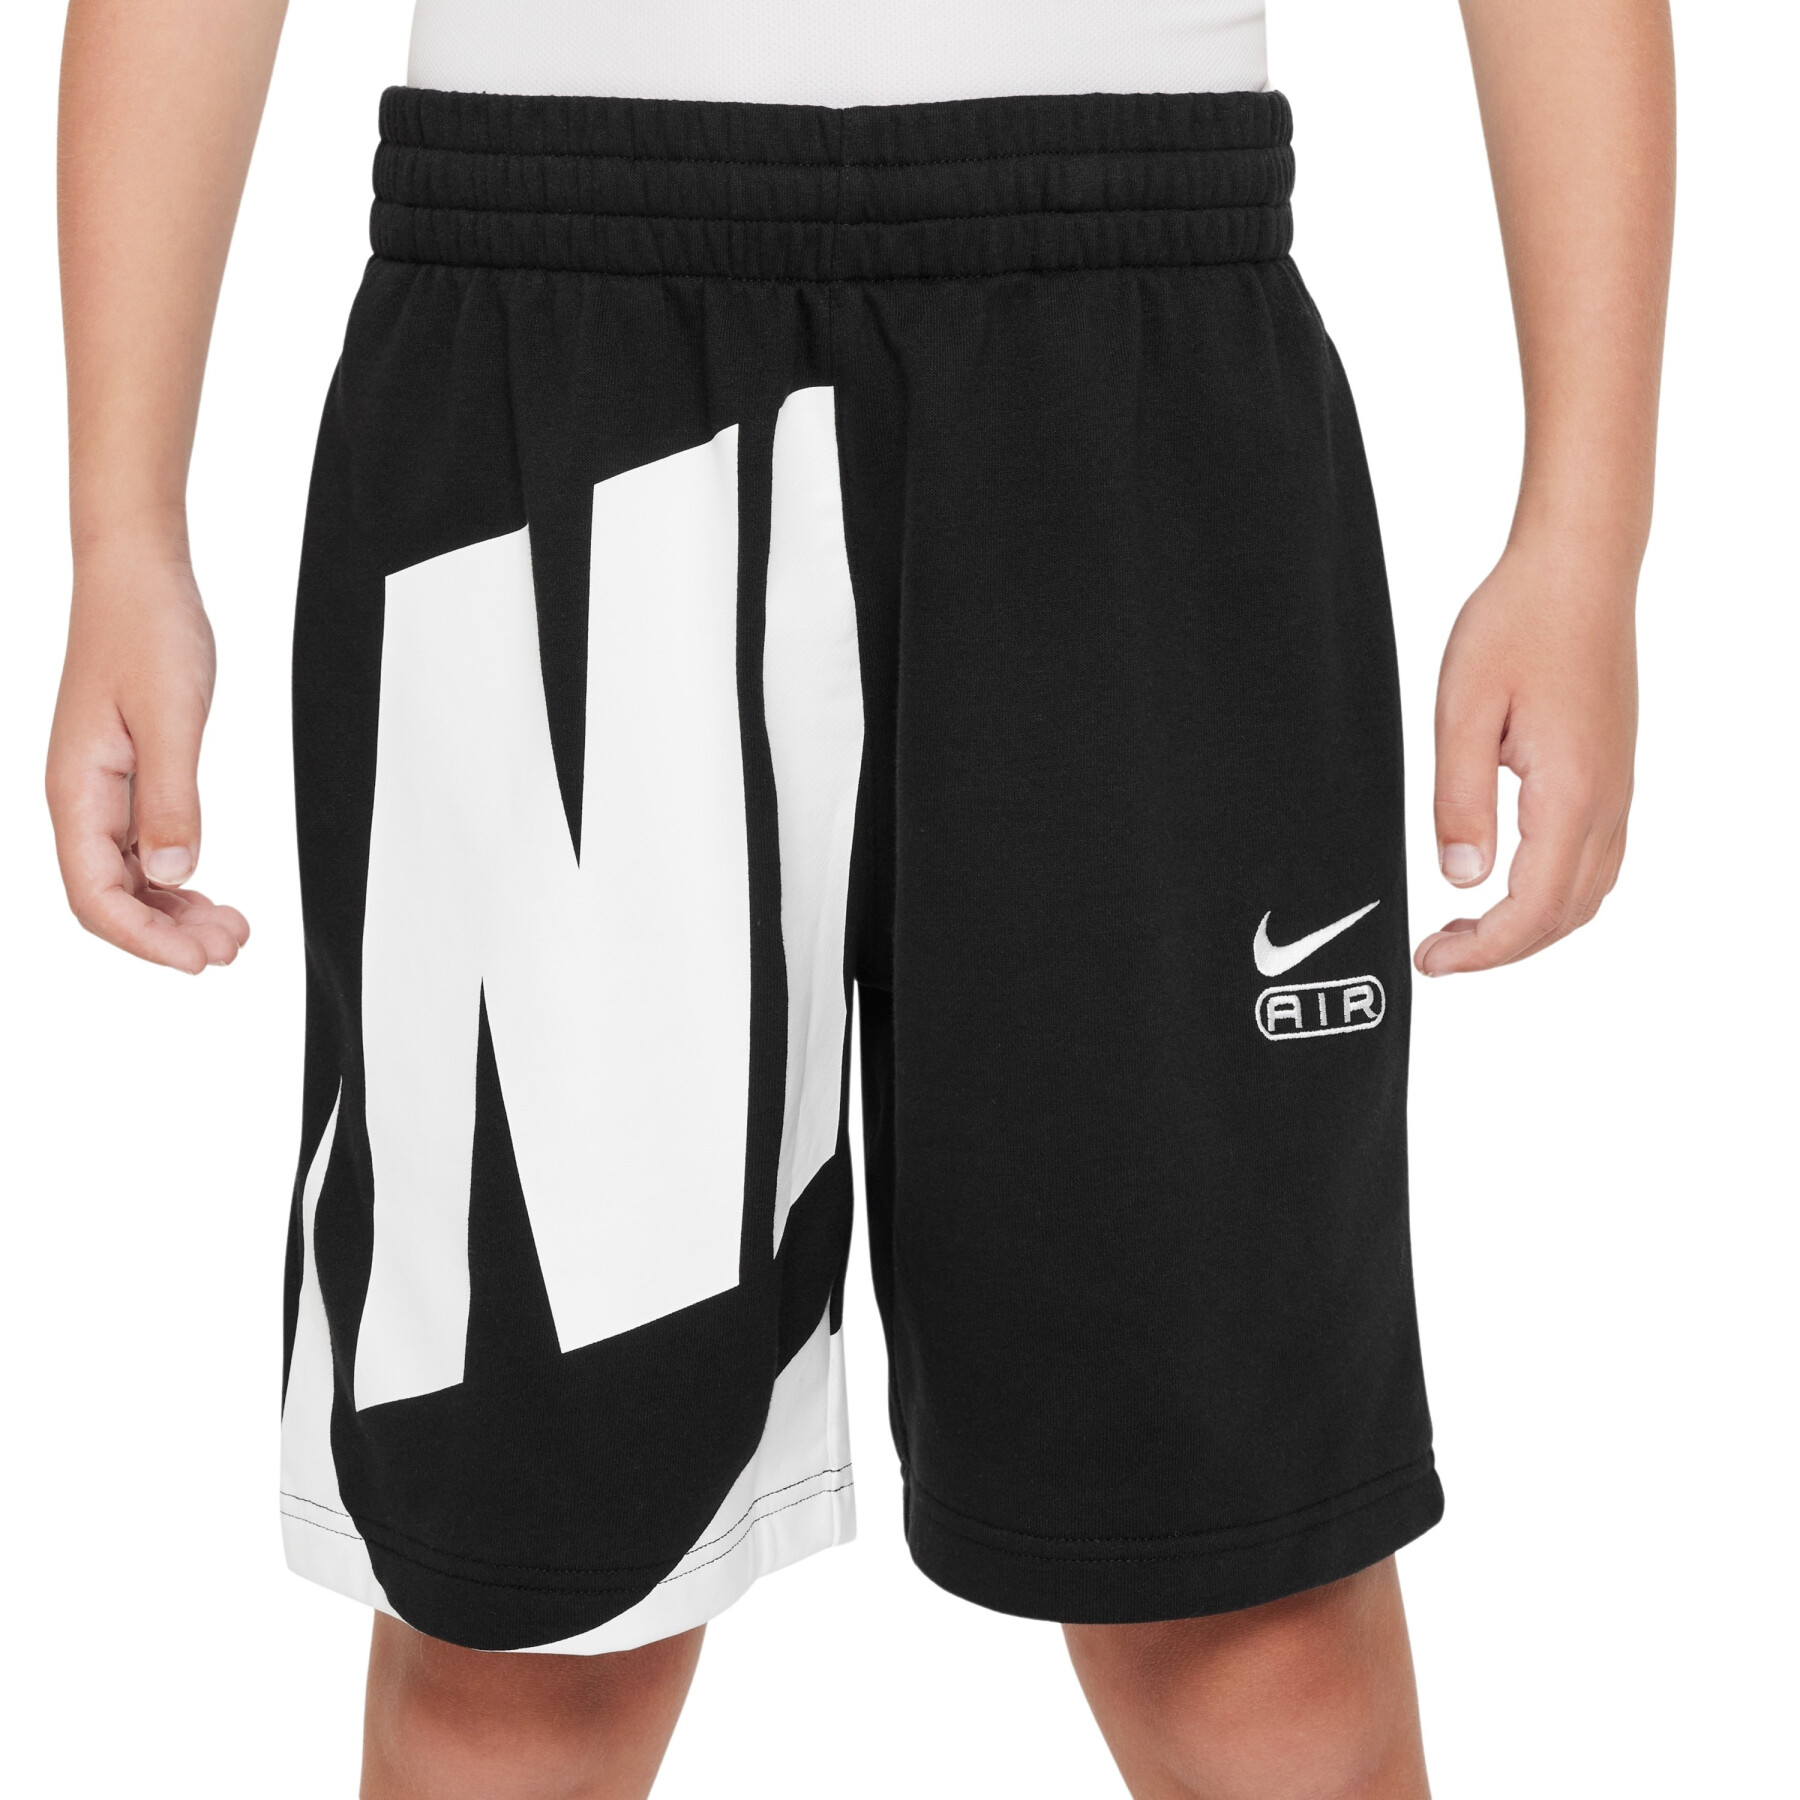 Pantalón corto niña Nike Air